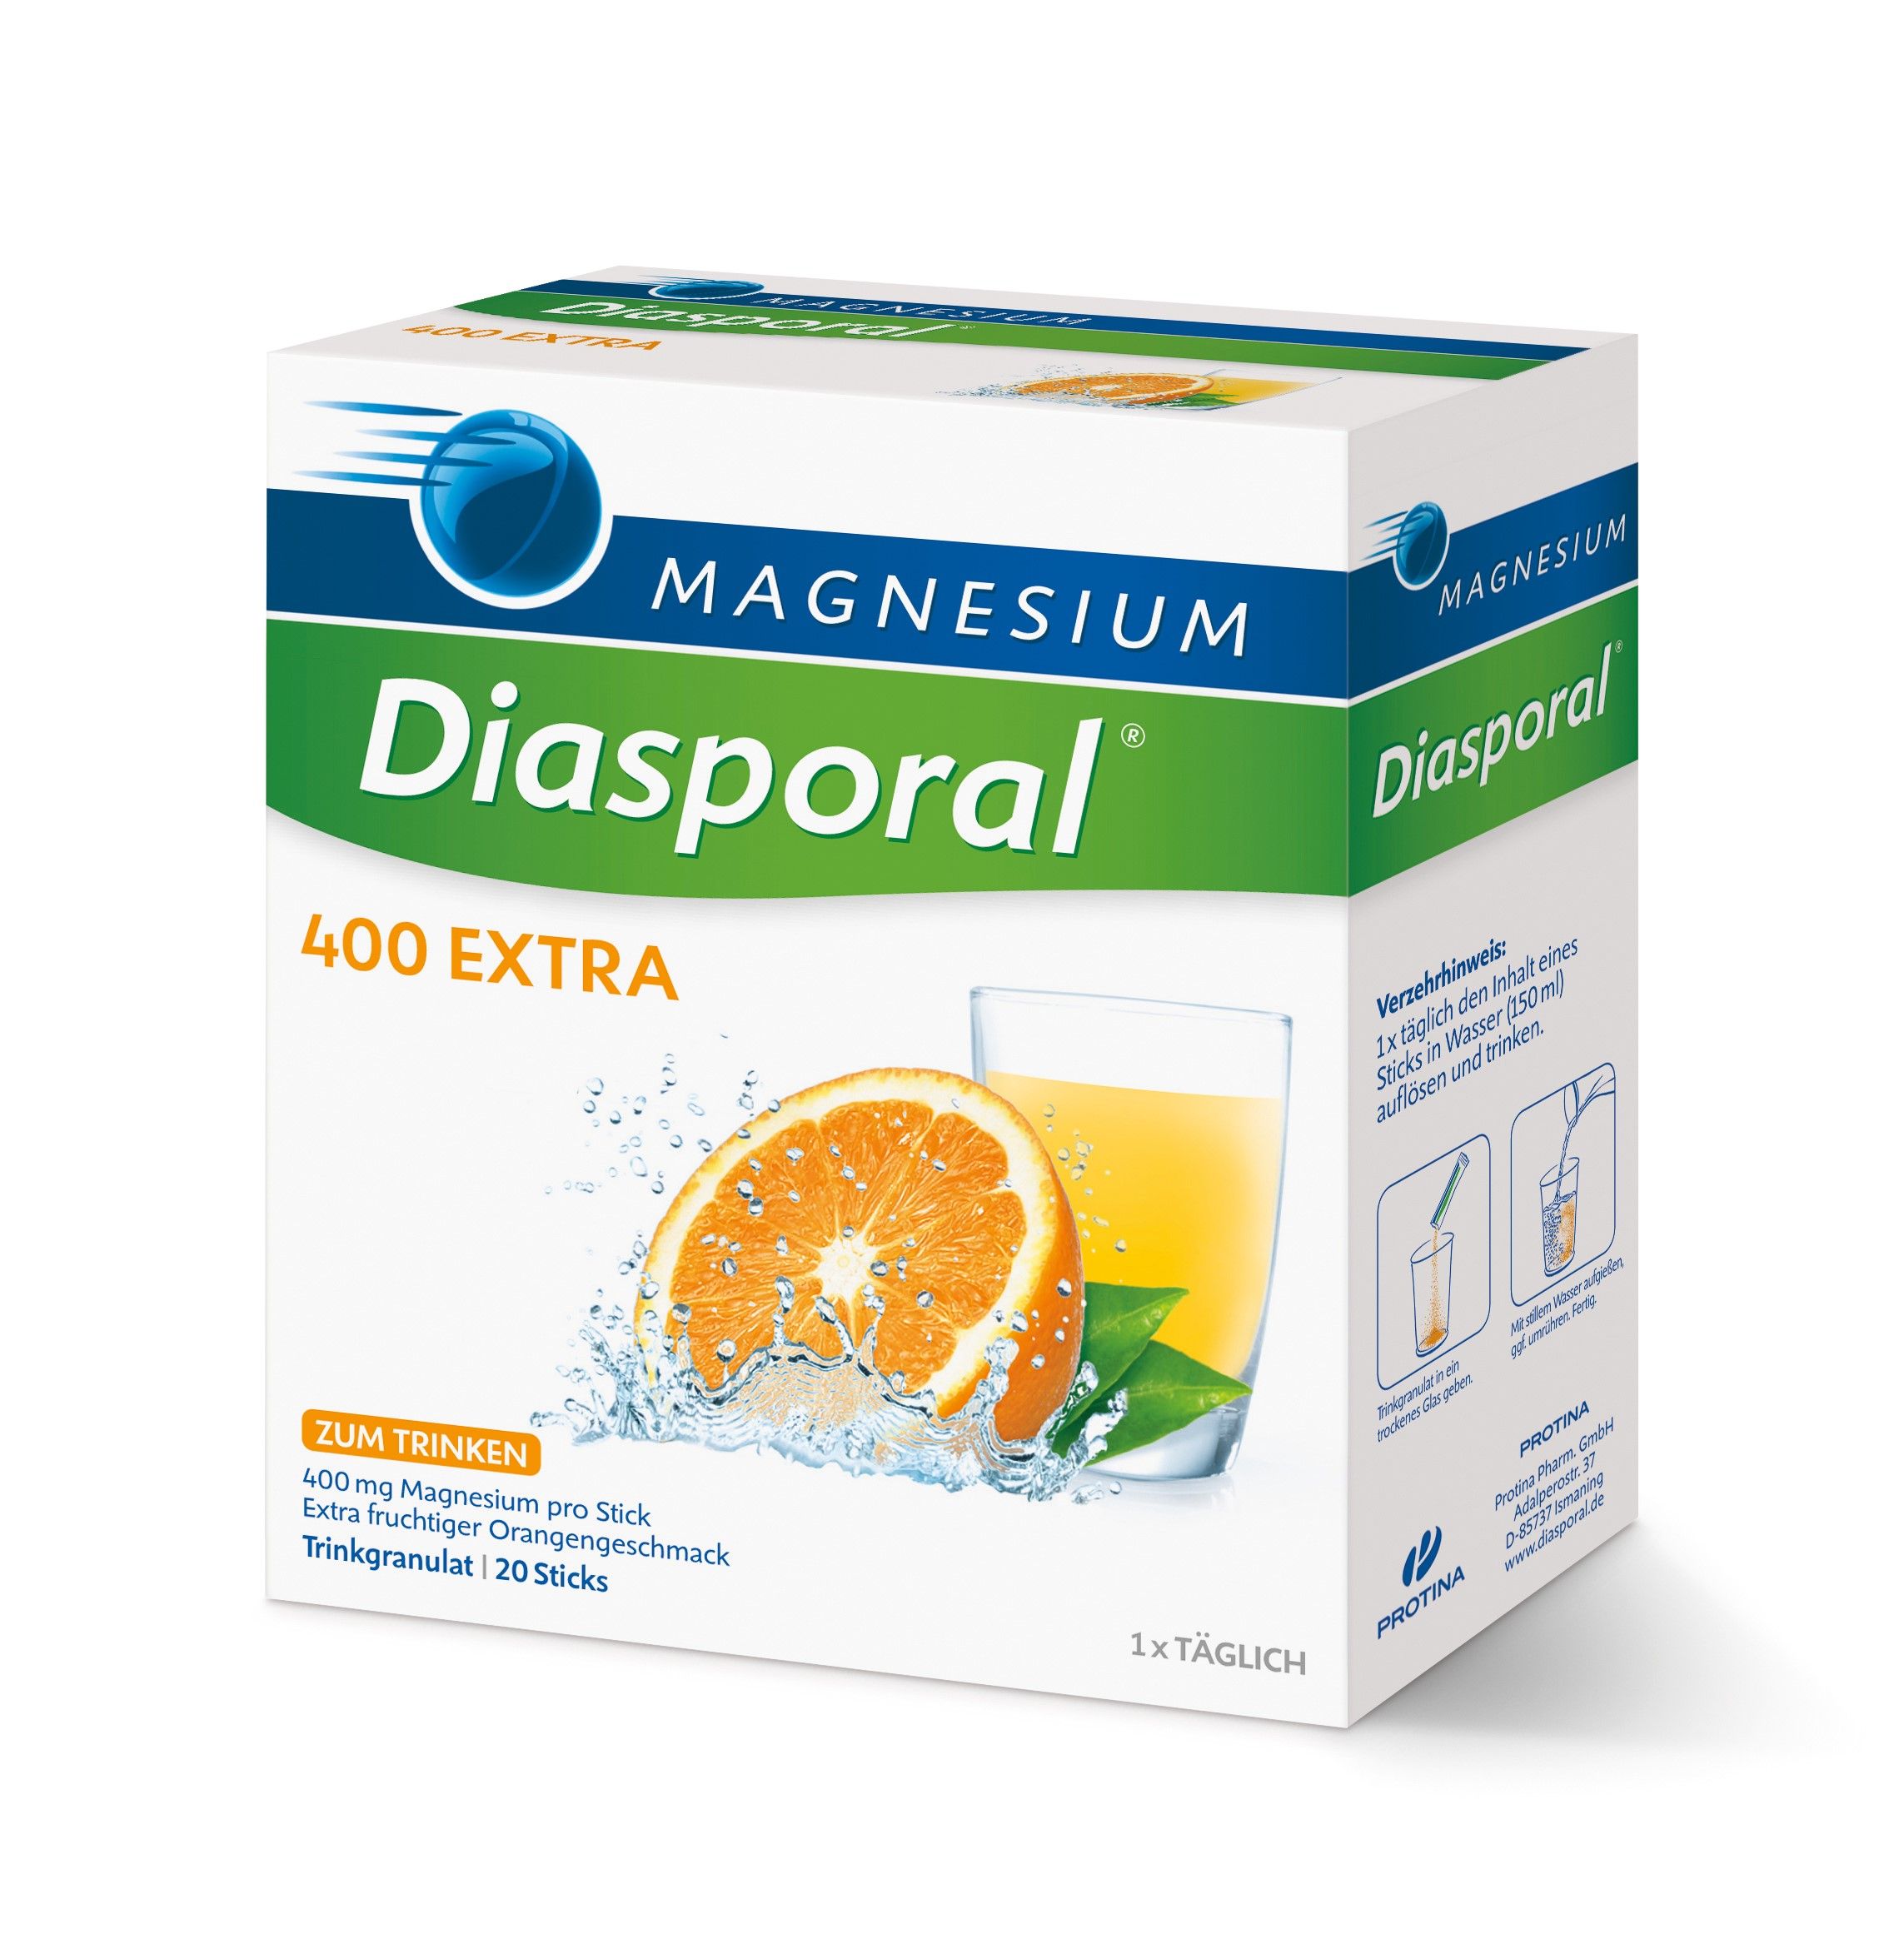 Magnesium-Diasporal® 400 EXTRA, Trinkgranulat 20Stück